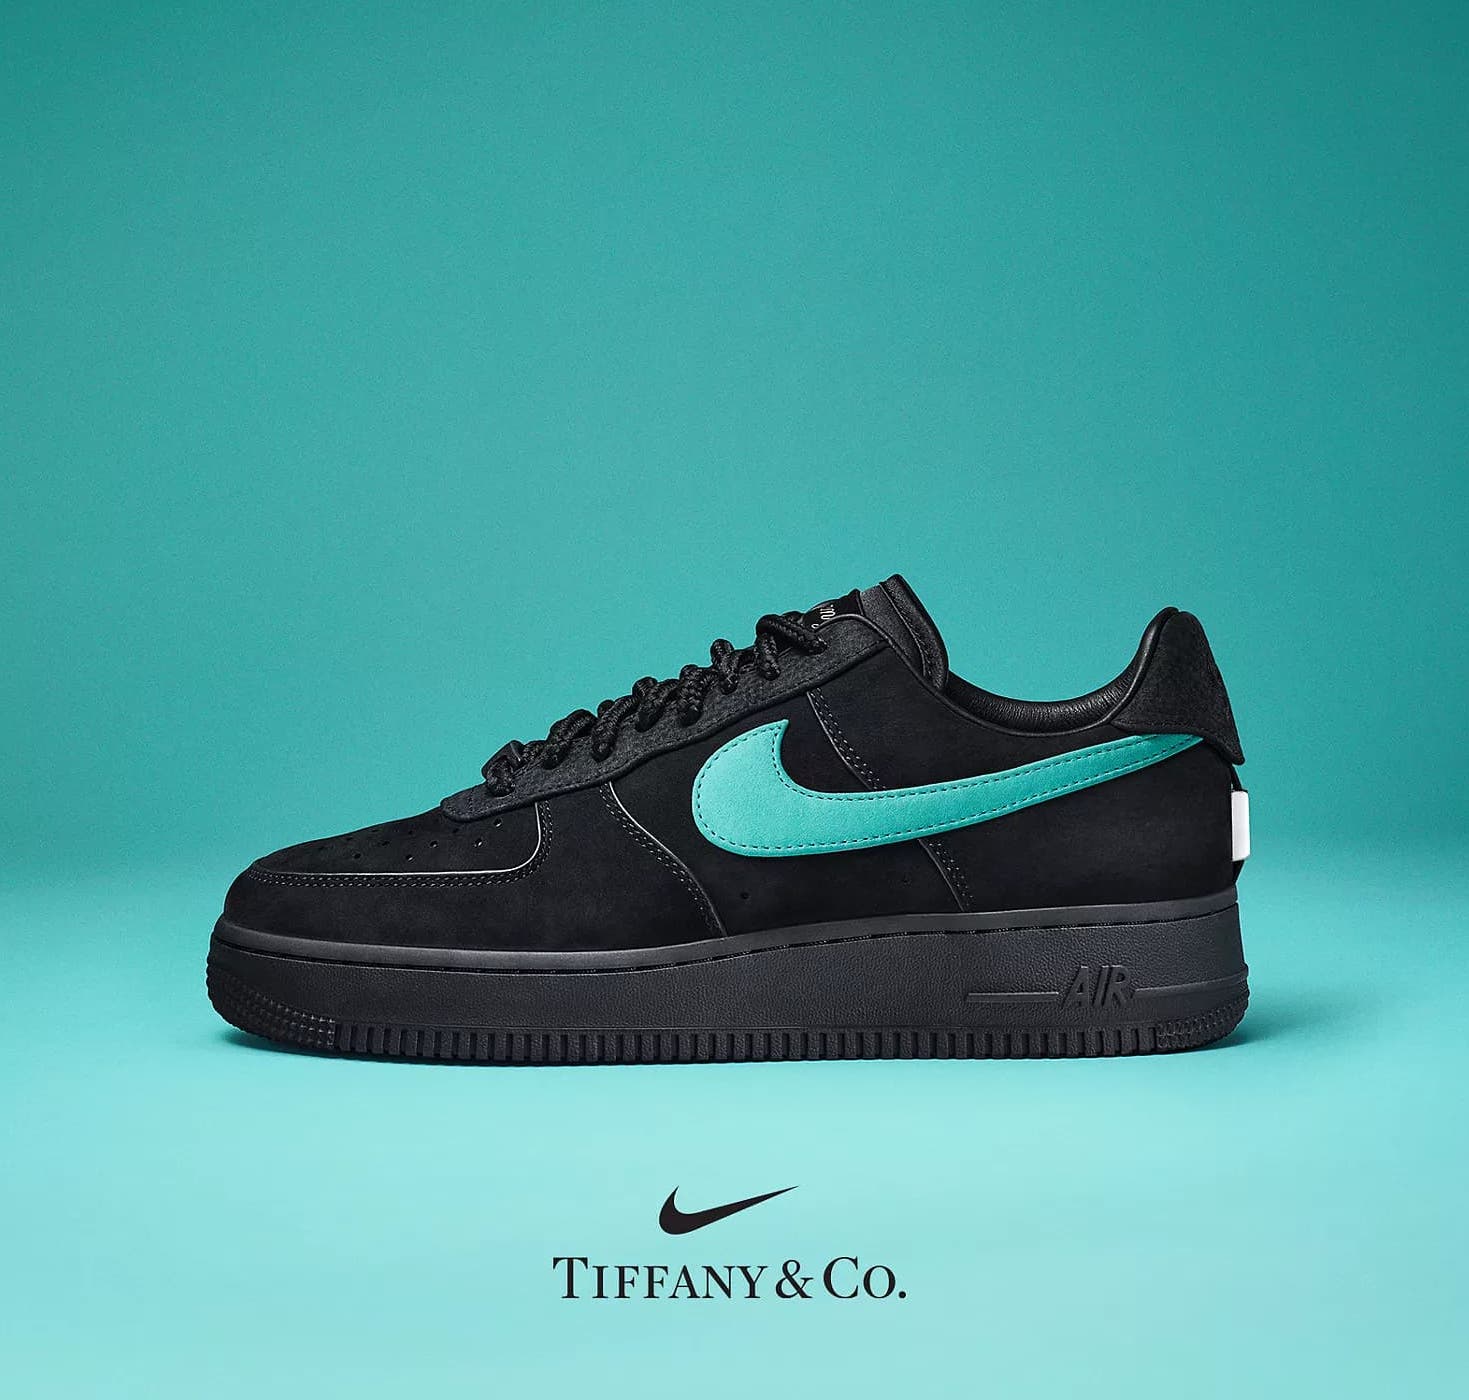 Collaborazione di scarpe Nike x Tiffany & Co.